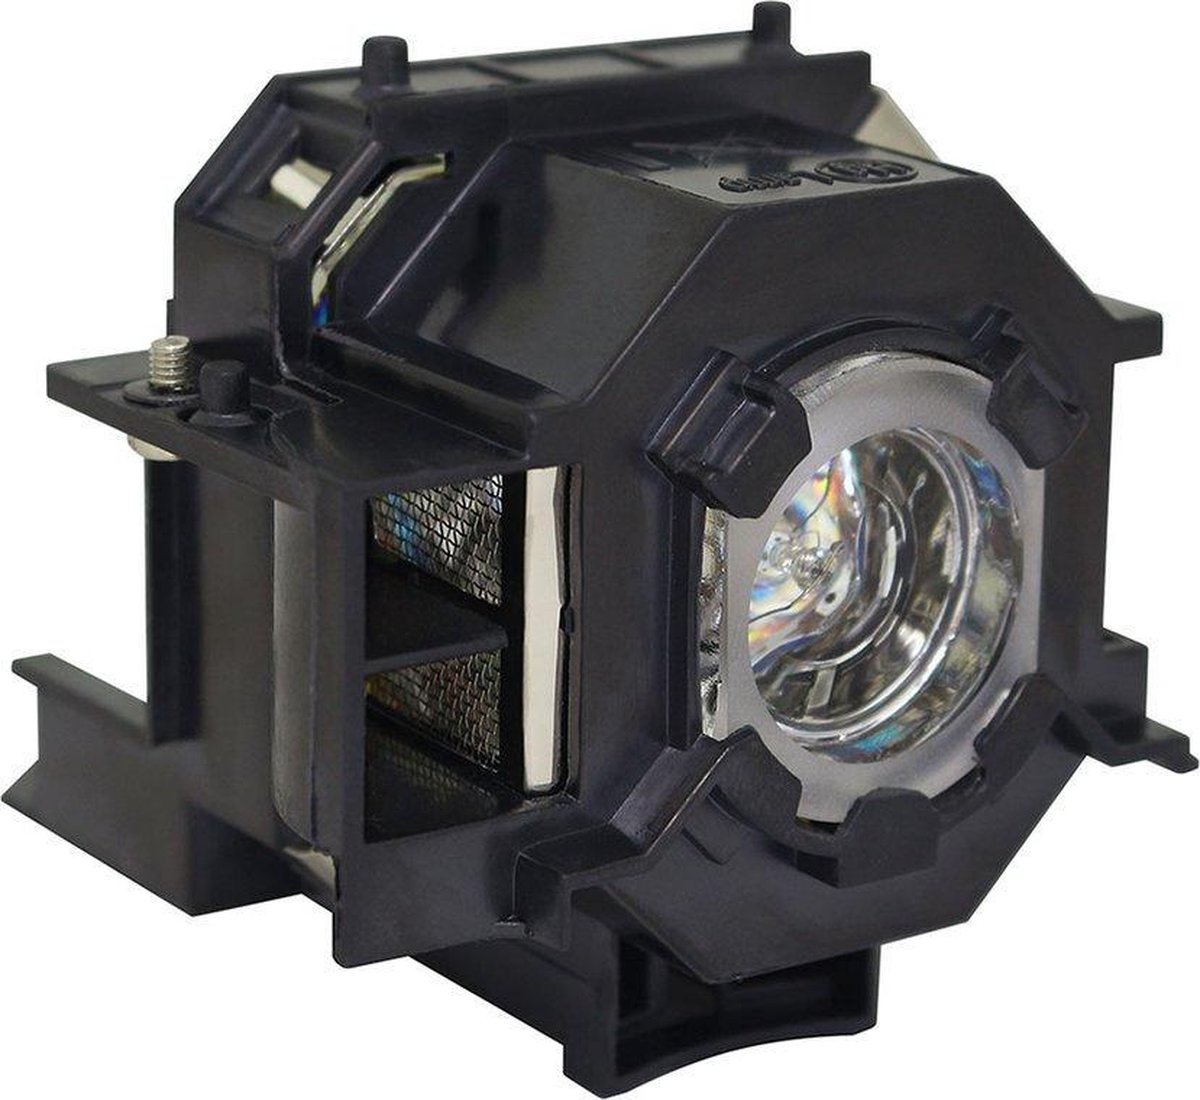 Beamerlamp geschikt voor de EPSON EMP-S52 beamer, lamp code LP41 / V13H010L41. Bevat originele P-VIP lamp, prestaties gelijk aan origineel.